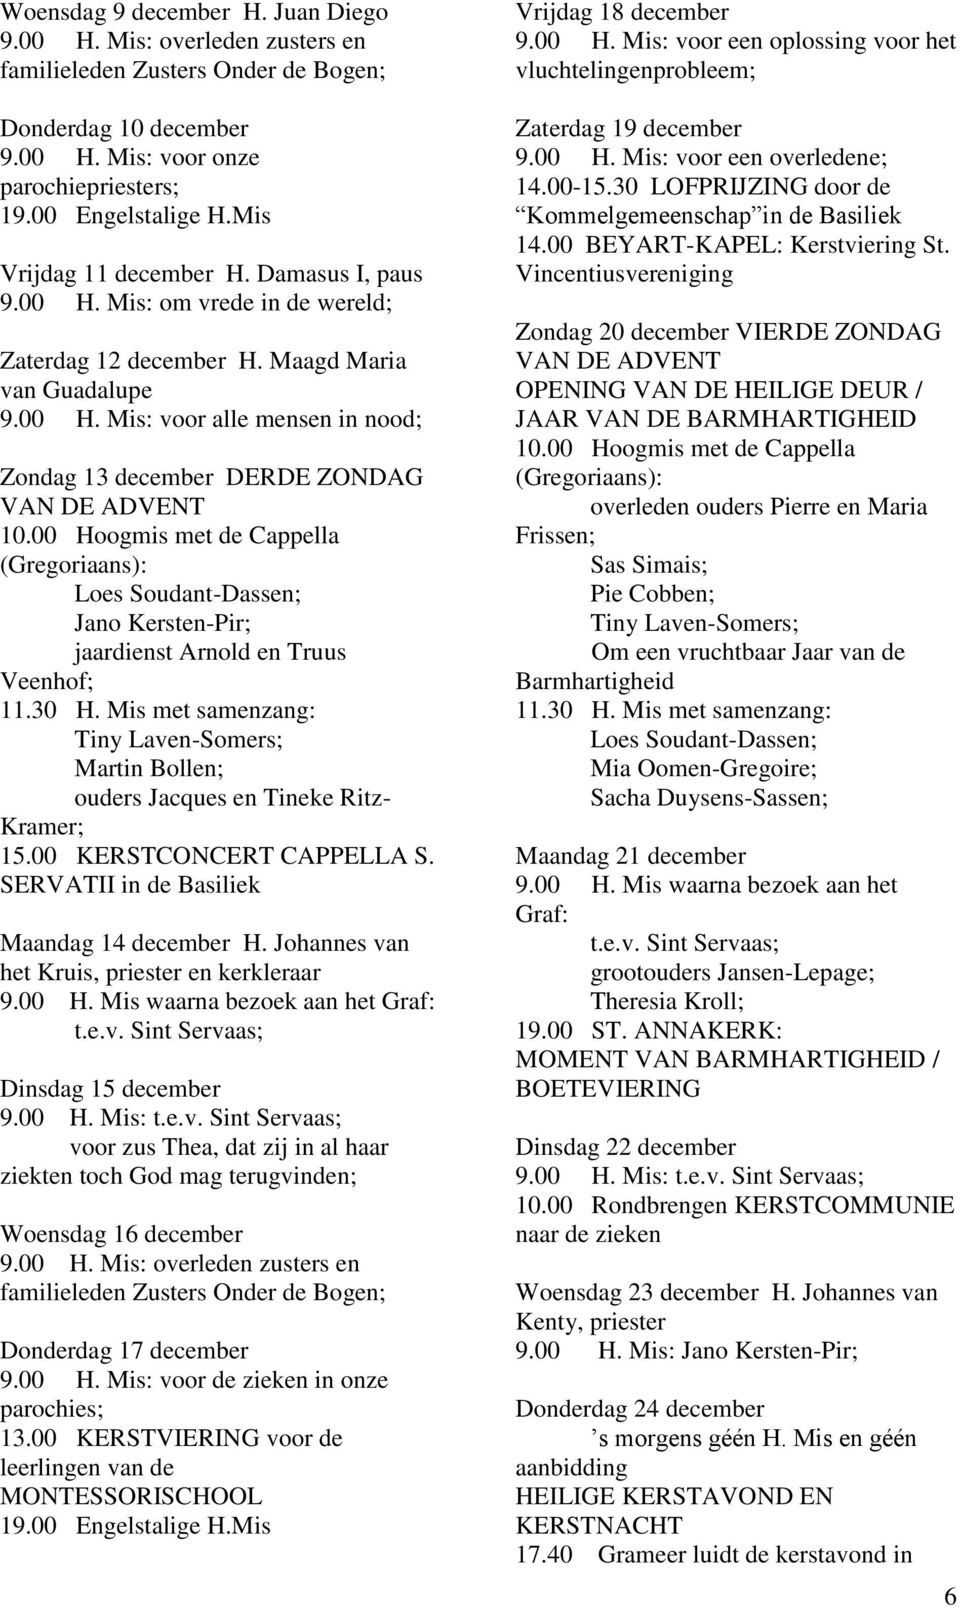 00 Hoogmis met de Cappella (Gregoriaans): Loes Soudant-Dassen; jaardienst Arnold en Truus Veenhof; 11.30 H. Mis met samenzang: Tiny Laven-Somers; ouders Jacques en Tineke Ritz- Kramer; 15.